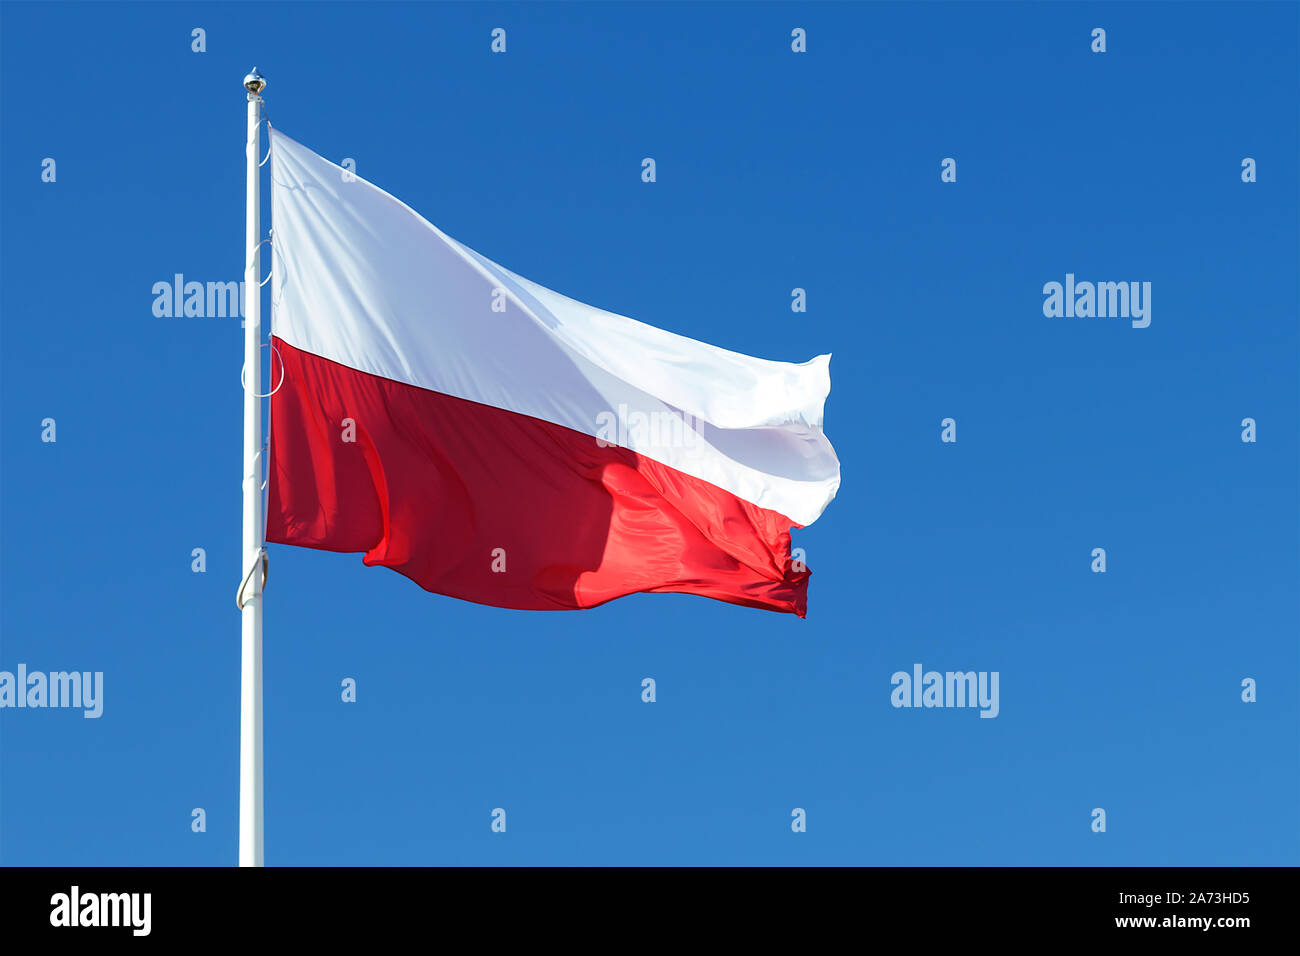 Brandissant le drapeau national de la Pologne sur un fond de ciel bleu clair Banque D'Images